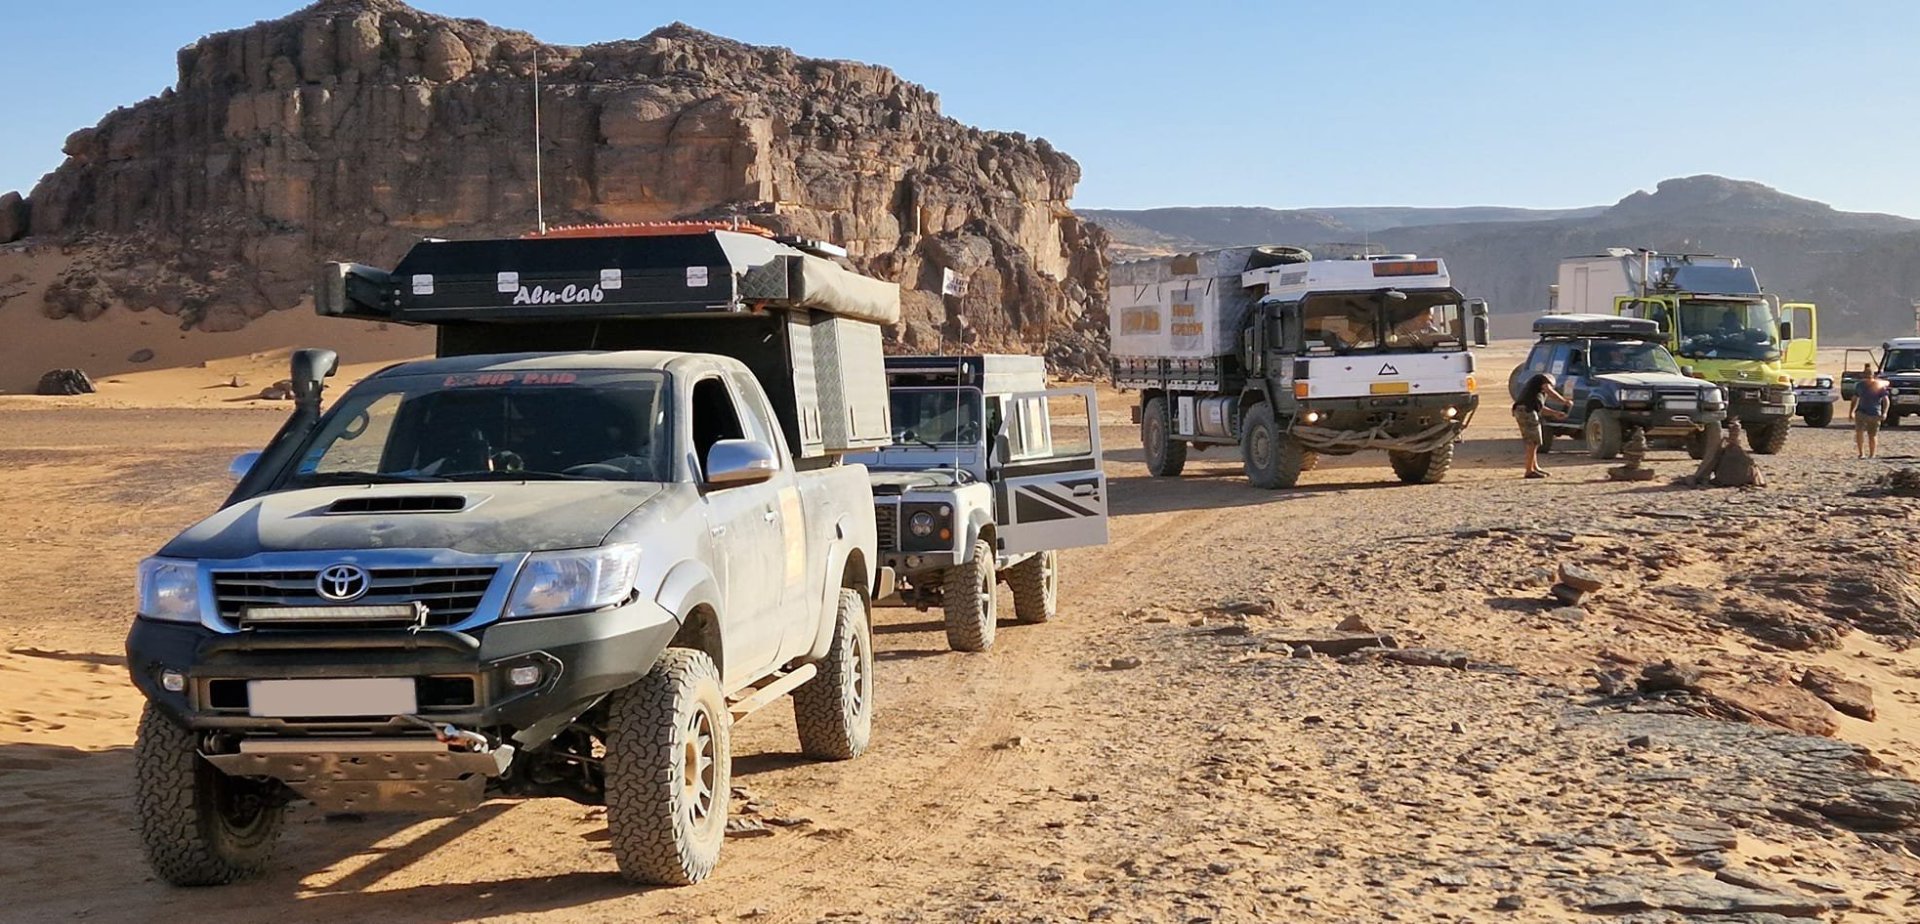 Photo prise lors d'un raid dans les désert en Algérie des 4x4 et camions à la suite